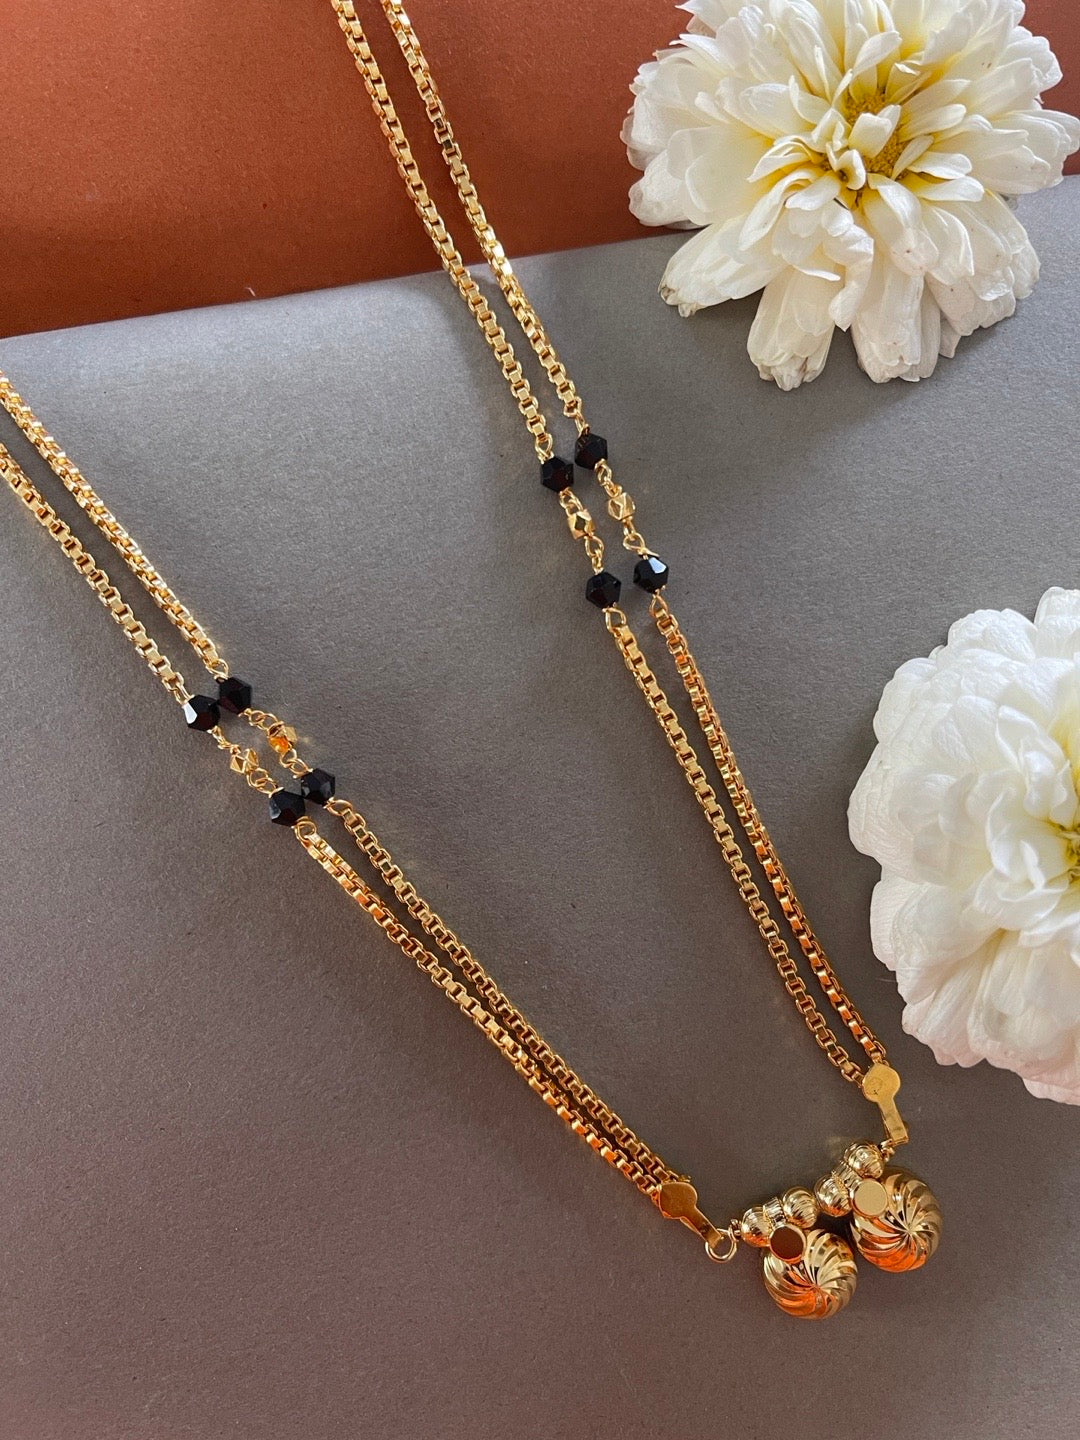 latest light weight gold mangalsutra designs with price // new gold black  beads mangalsutra designs 